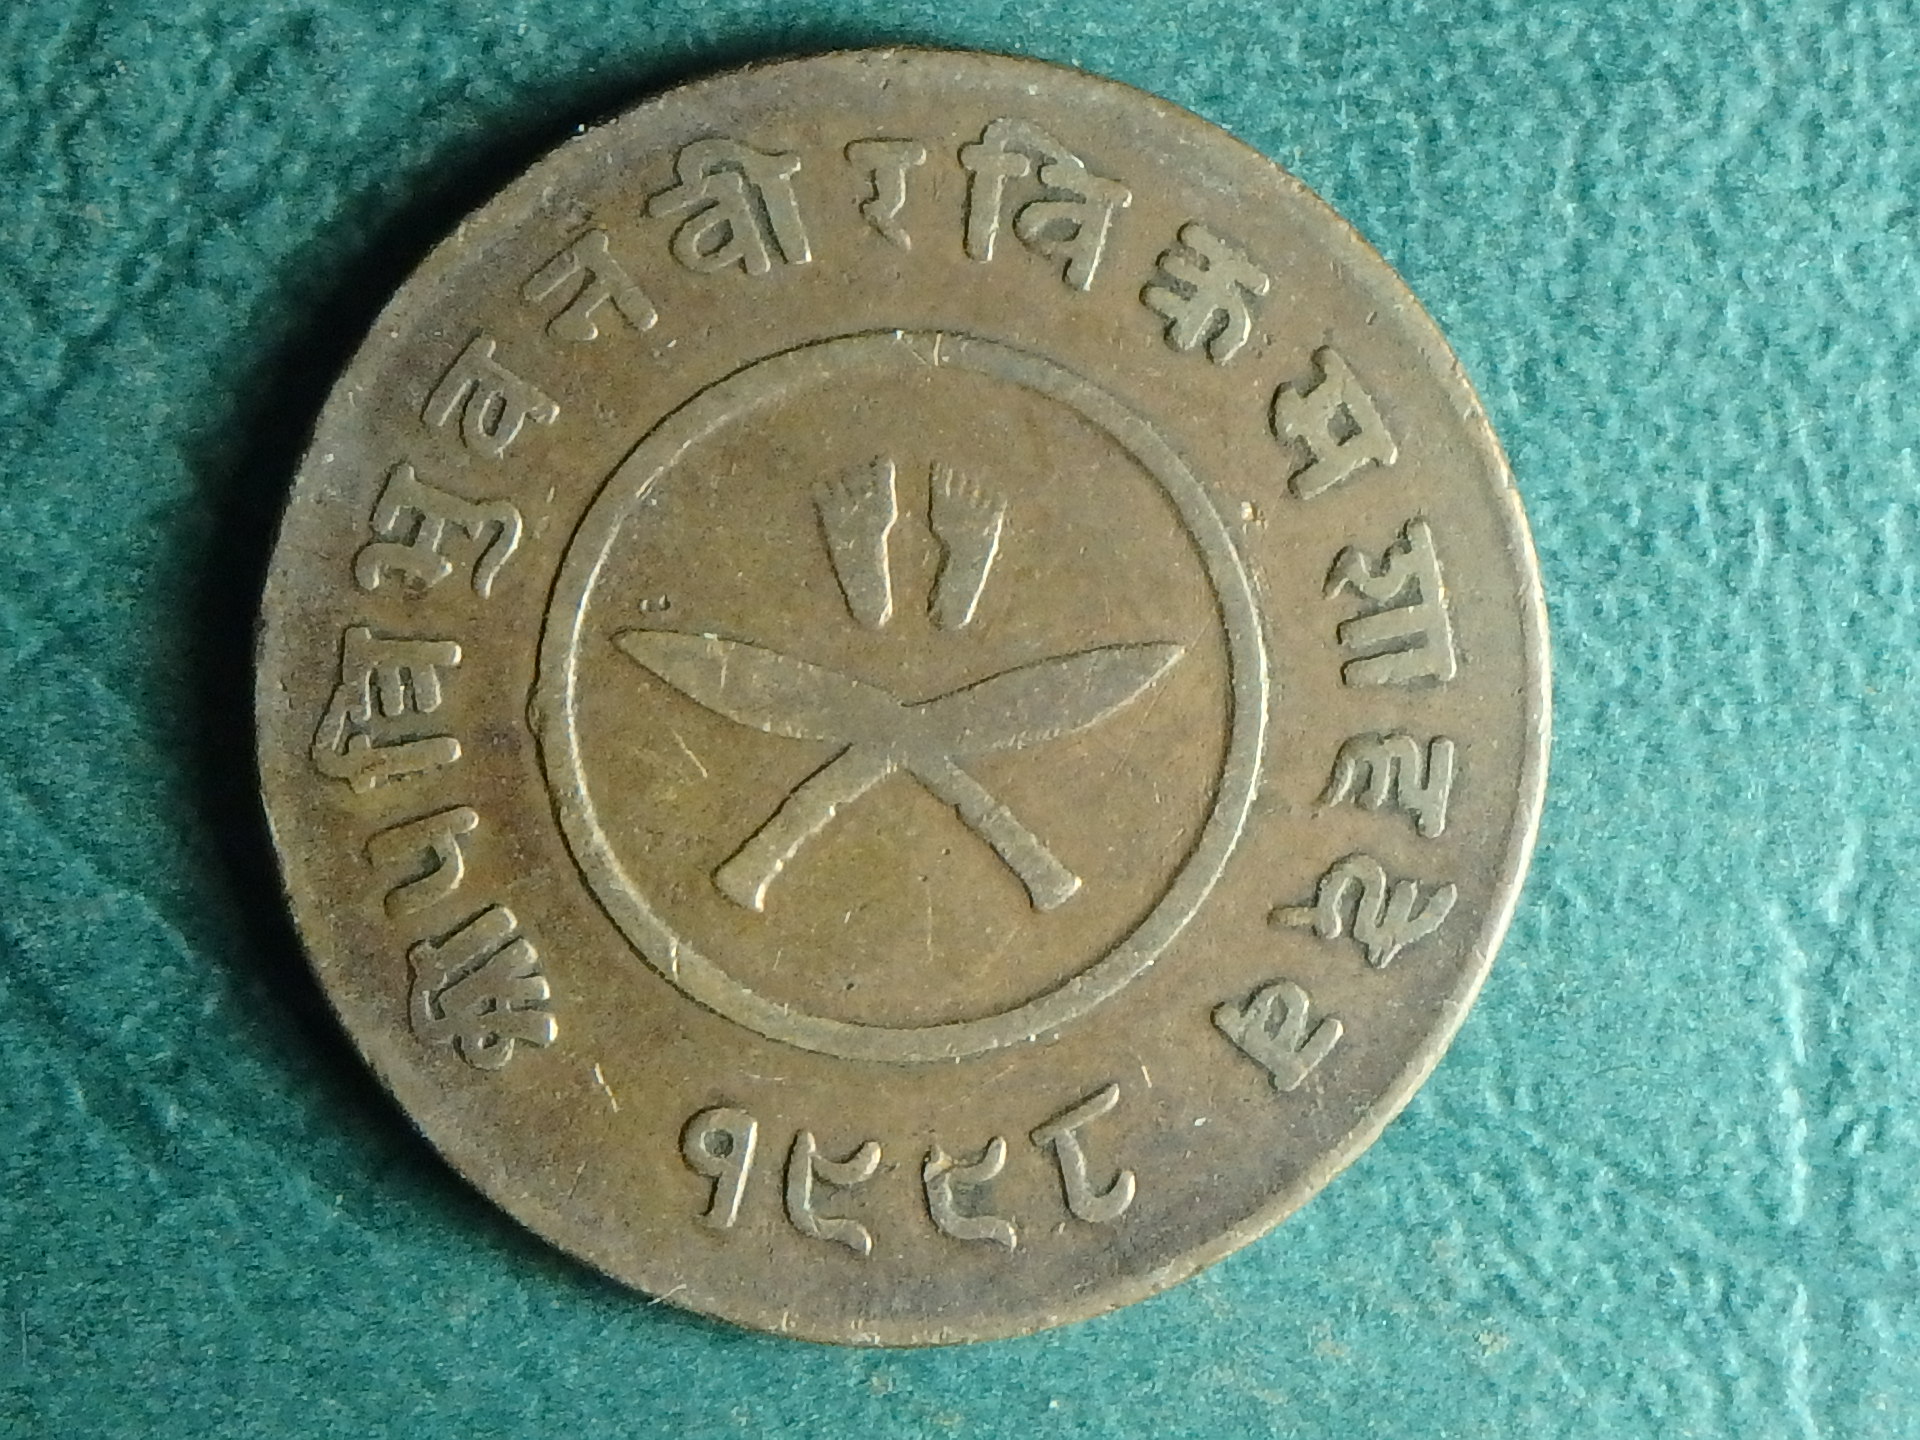 1941 Nepal 2 p rev.JPG